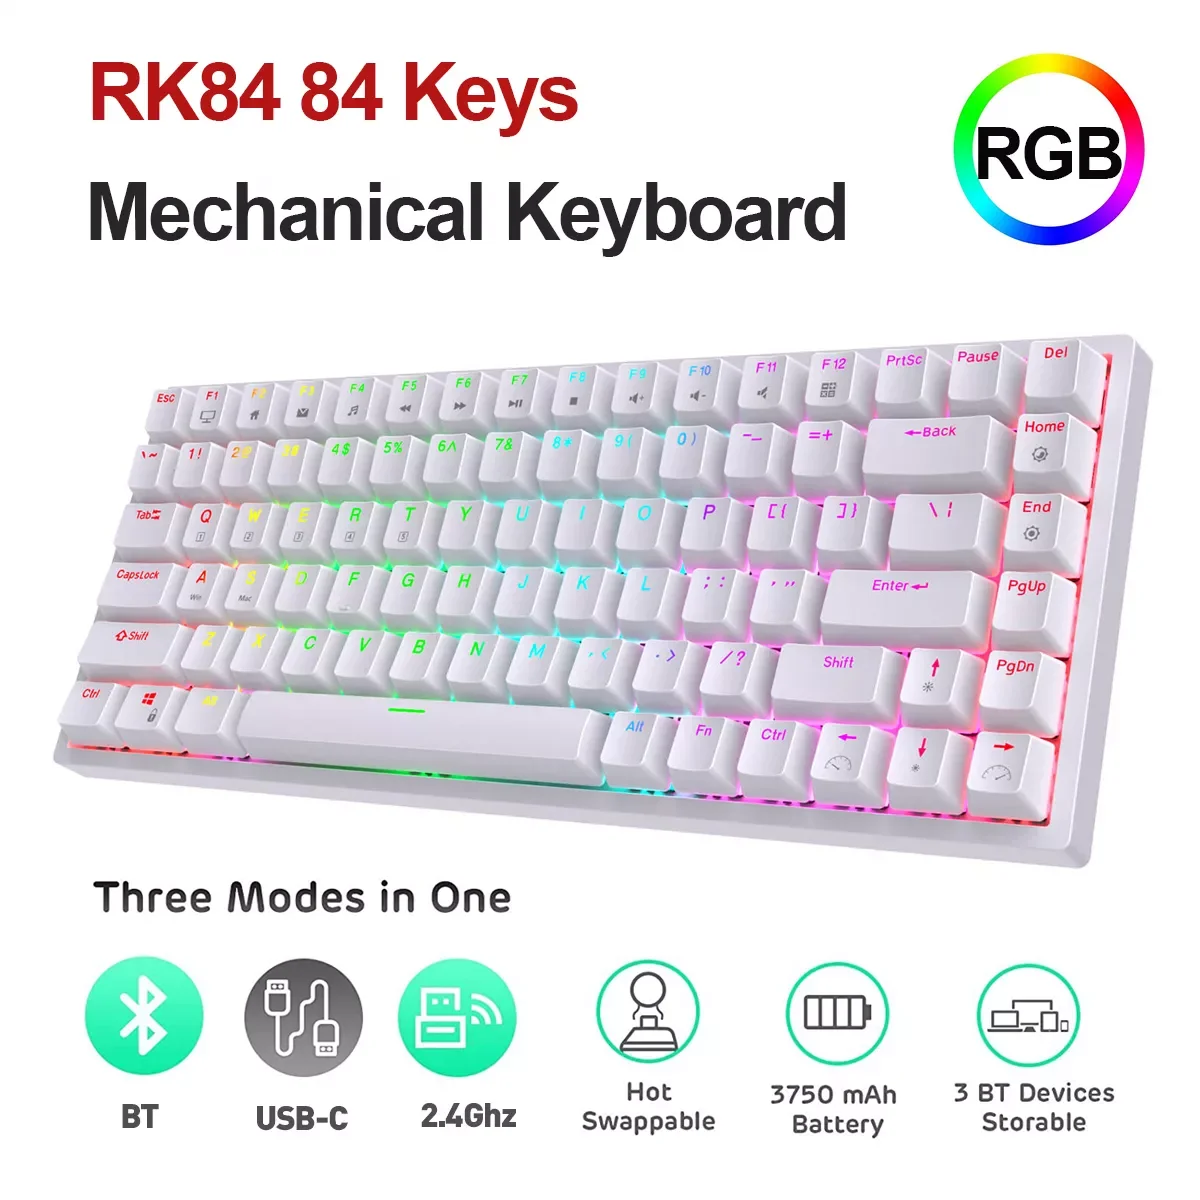 

RK84 механическая клавиатура 84 клавиши RGB Три режима беспроводной BT 5,0 + 2,4 ГГц + Type-C Проводная клавиатура с горячей заменой RK переключатель